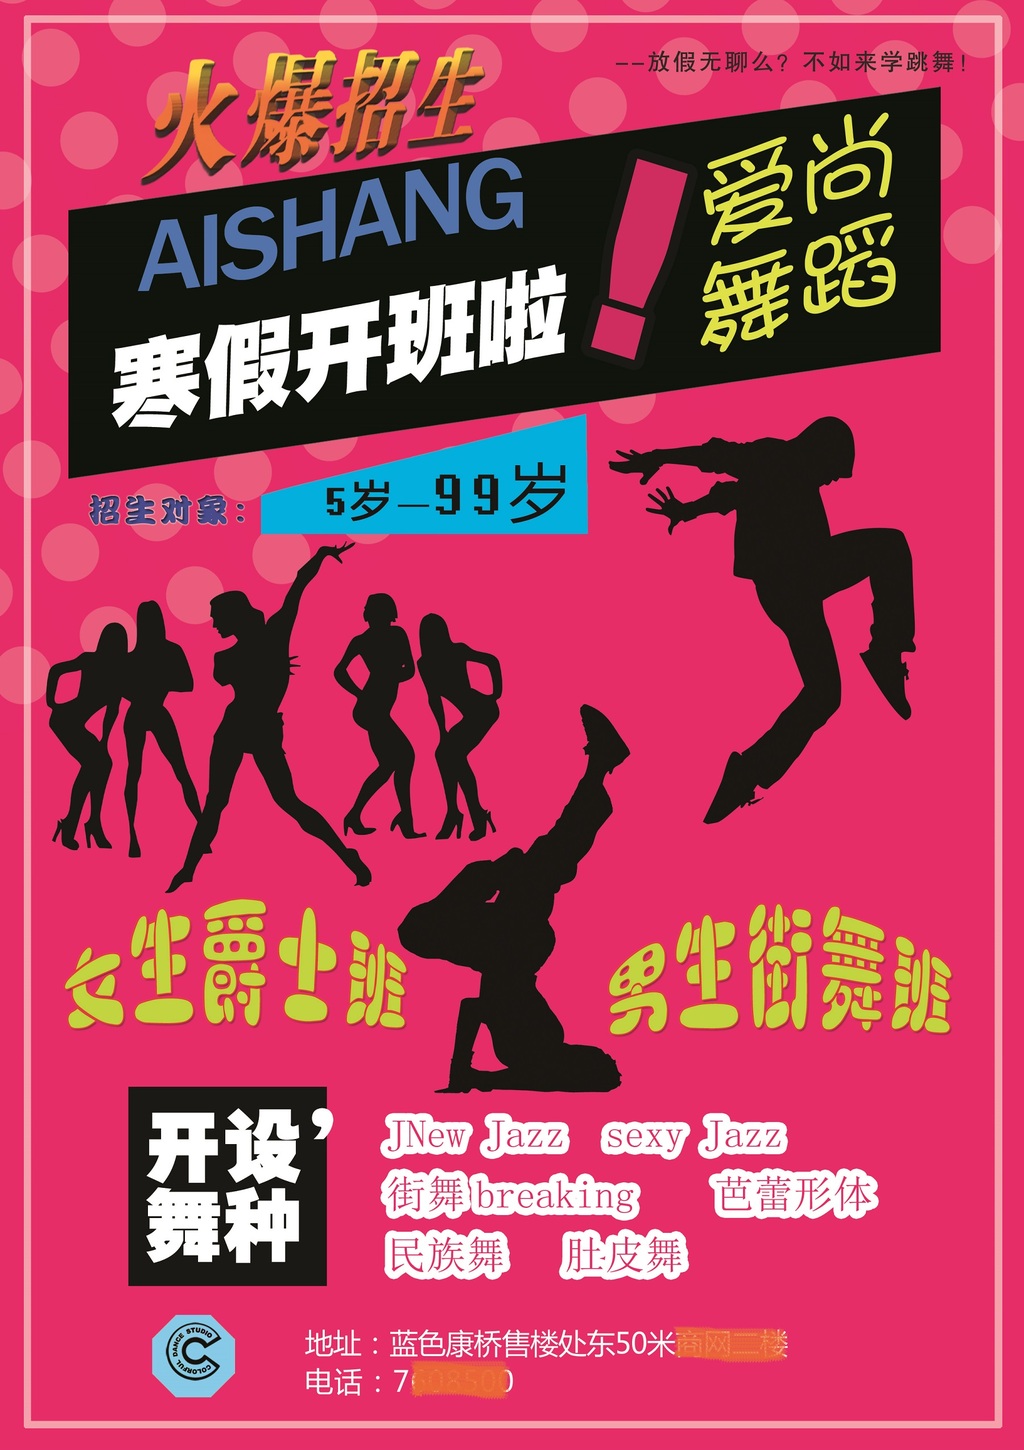 舞蹈培训班寒假招生宣传活动海报模版图片设计